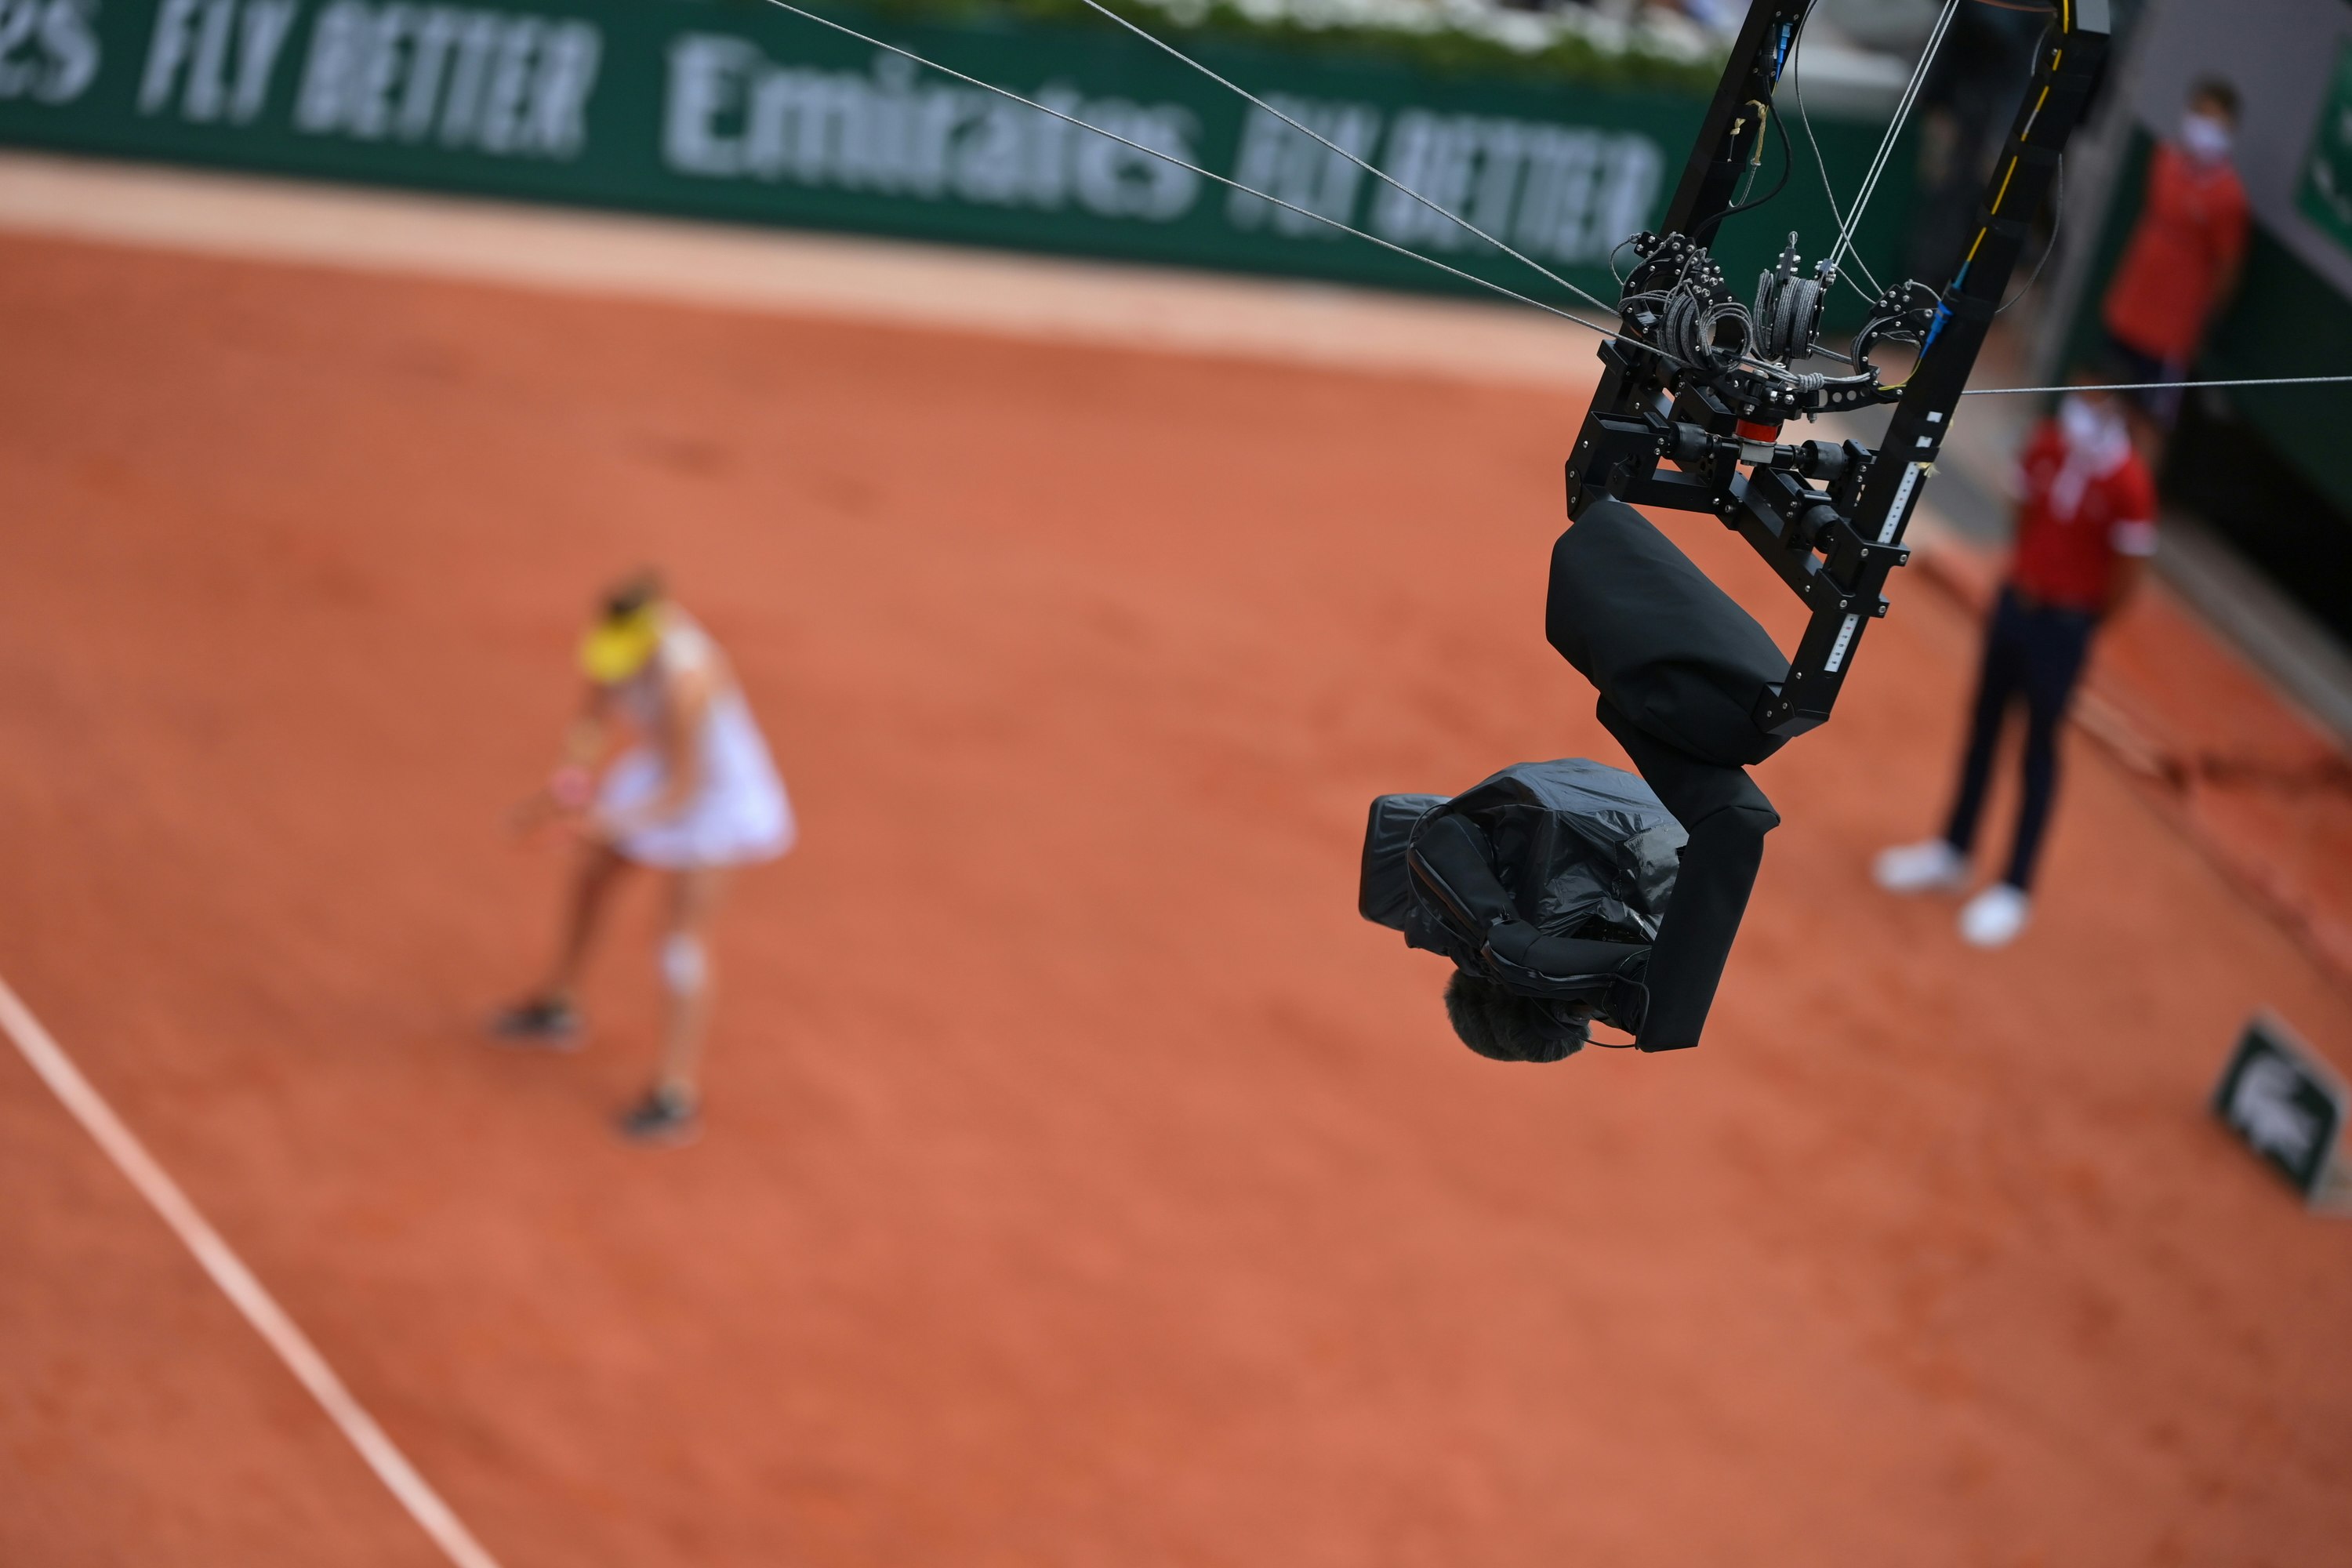 How and where to watch Roland-Garros 2022? - Roland-Garros